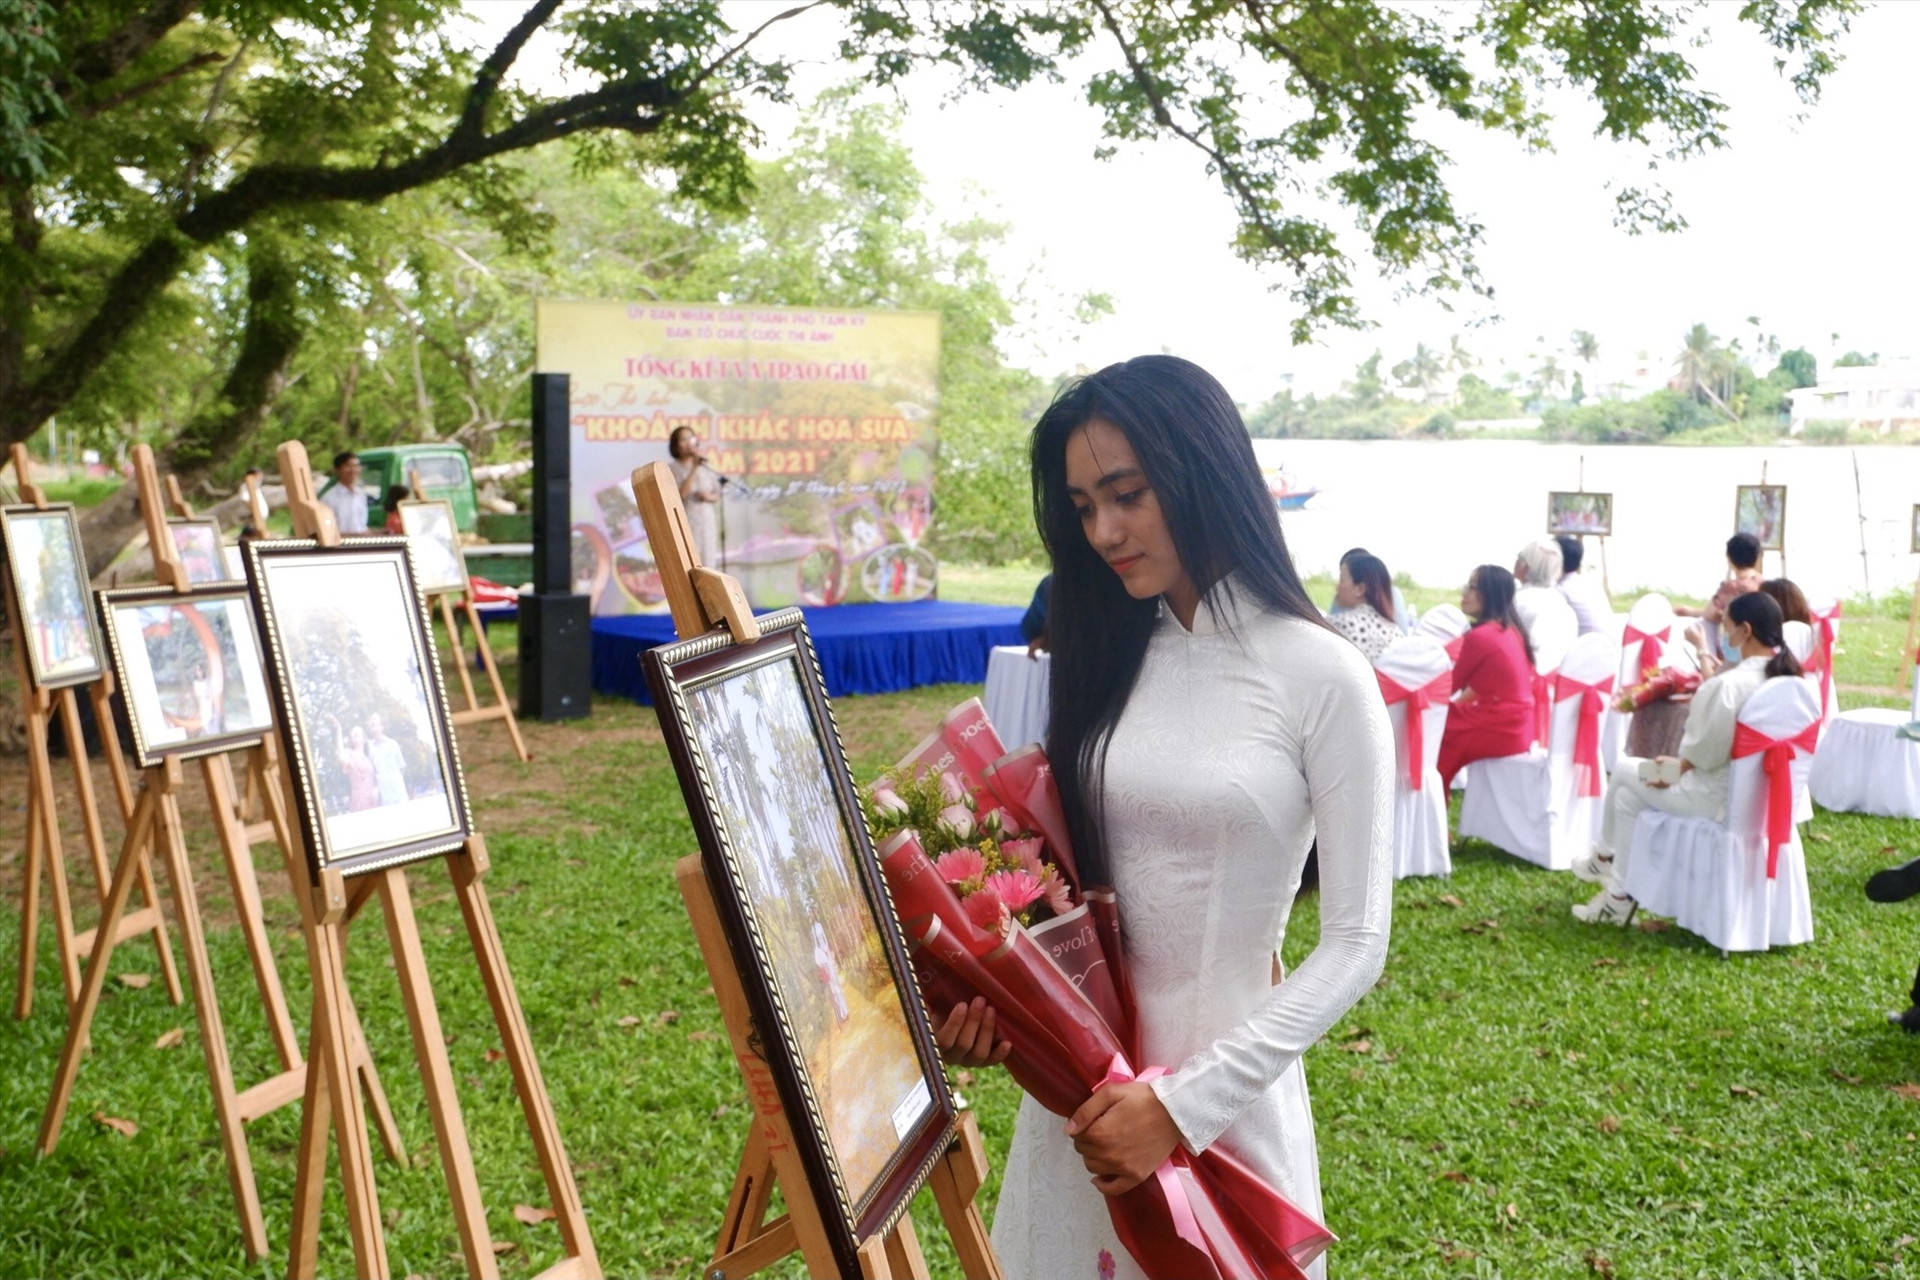 Các tác phẩm được giải cuộc thi ảnh “Khoảnh khắc mua hoa sưa năm 2021” được chọn trưng bày tại Khu vực Vườn Cừa, Phường Hòa Hương. Ảnh: X.H